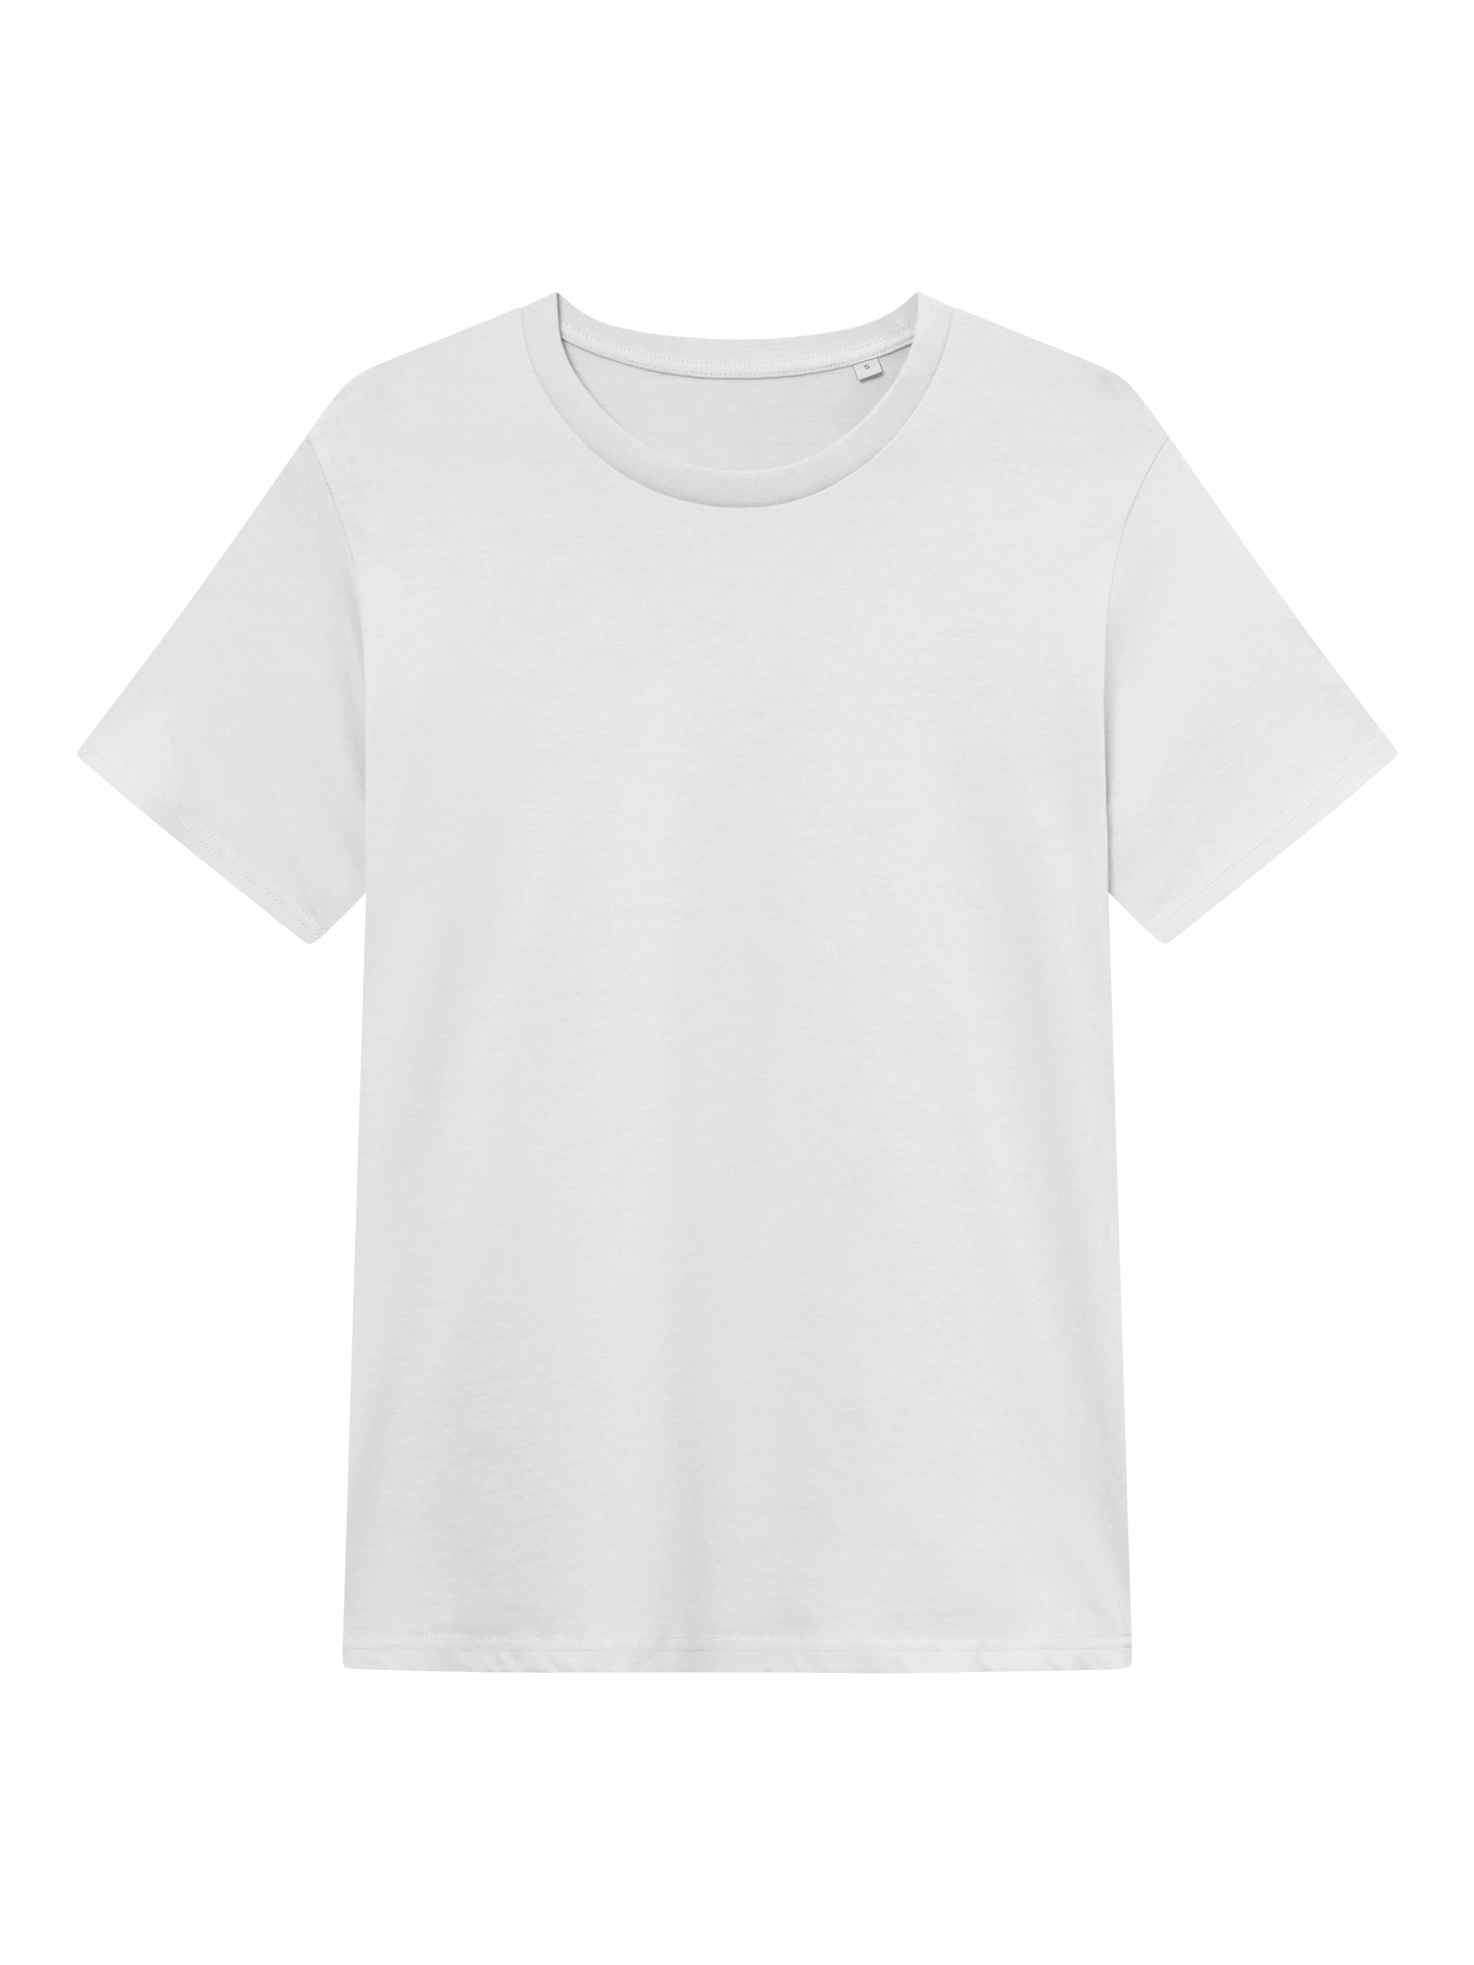 Smilo 365 T-shirt